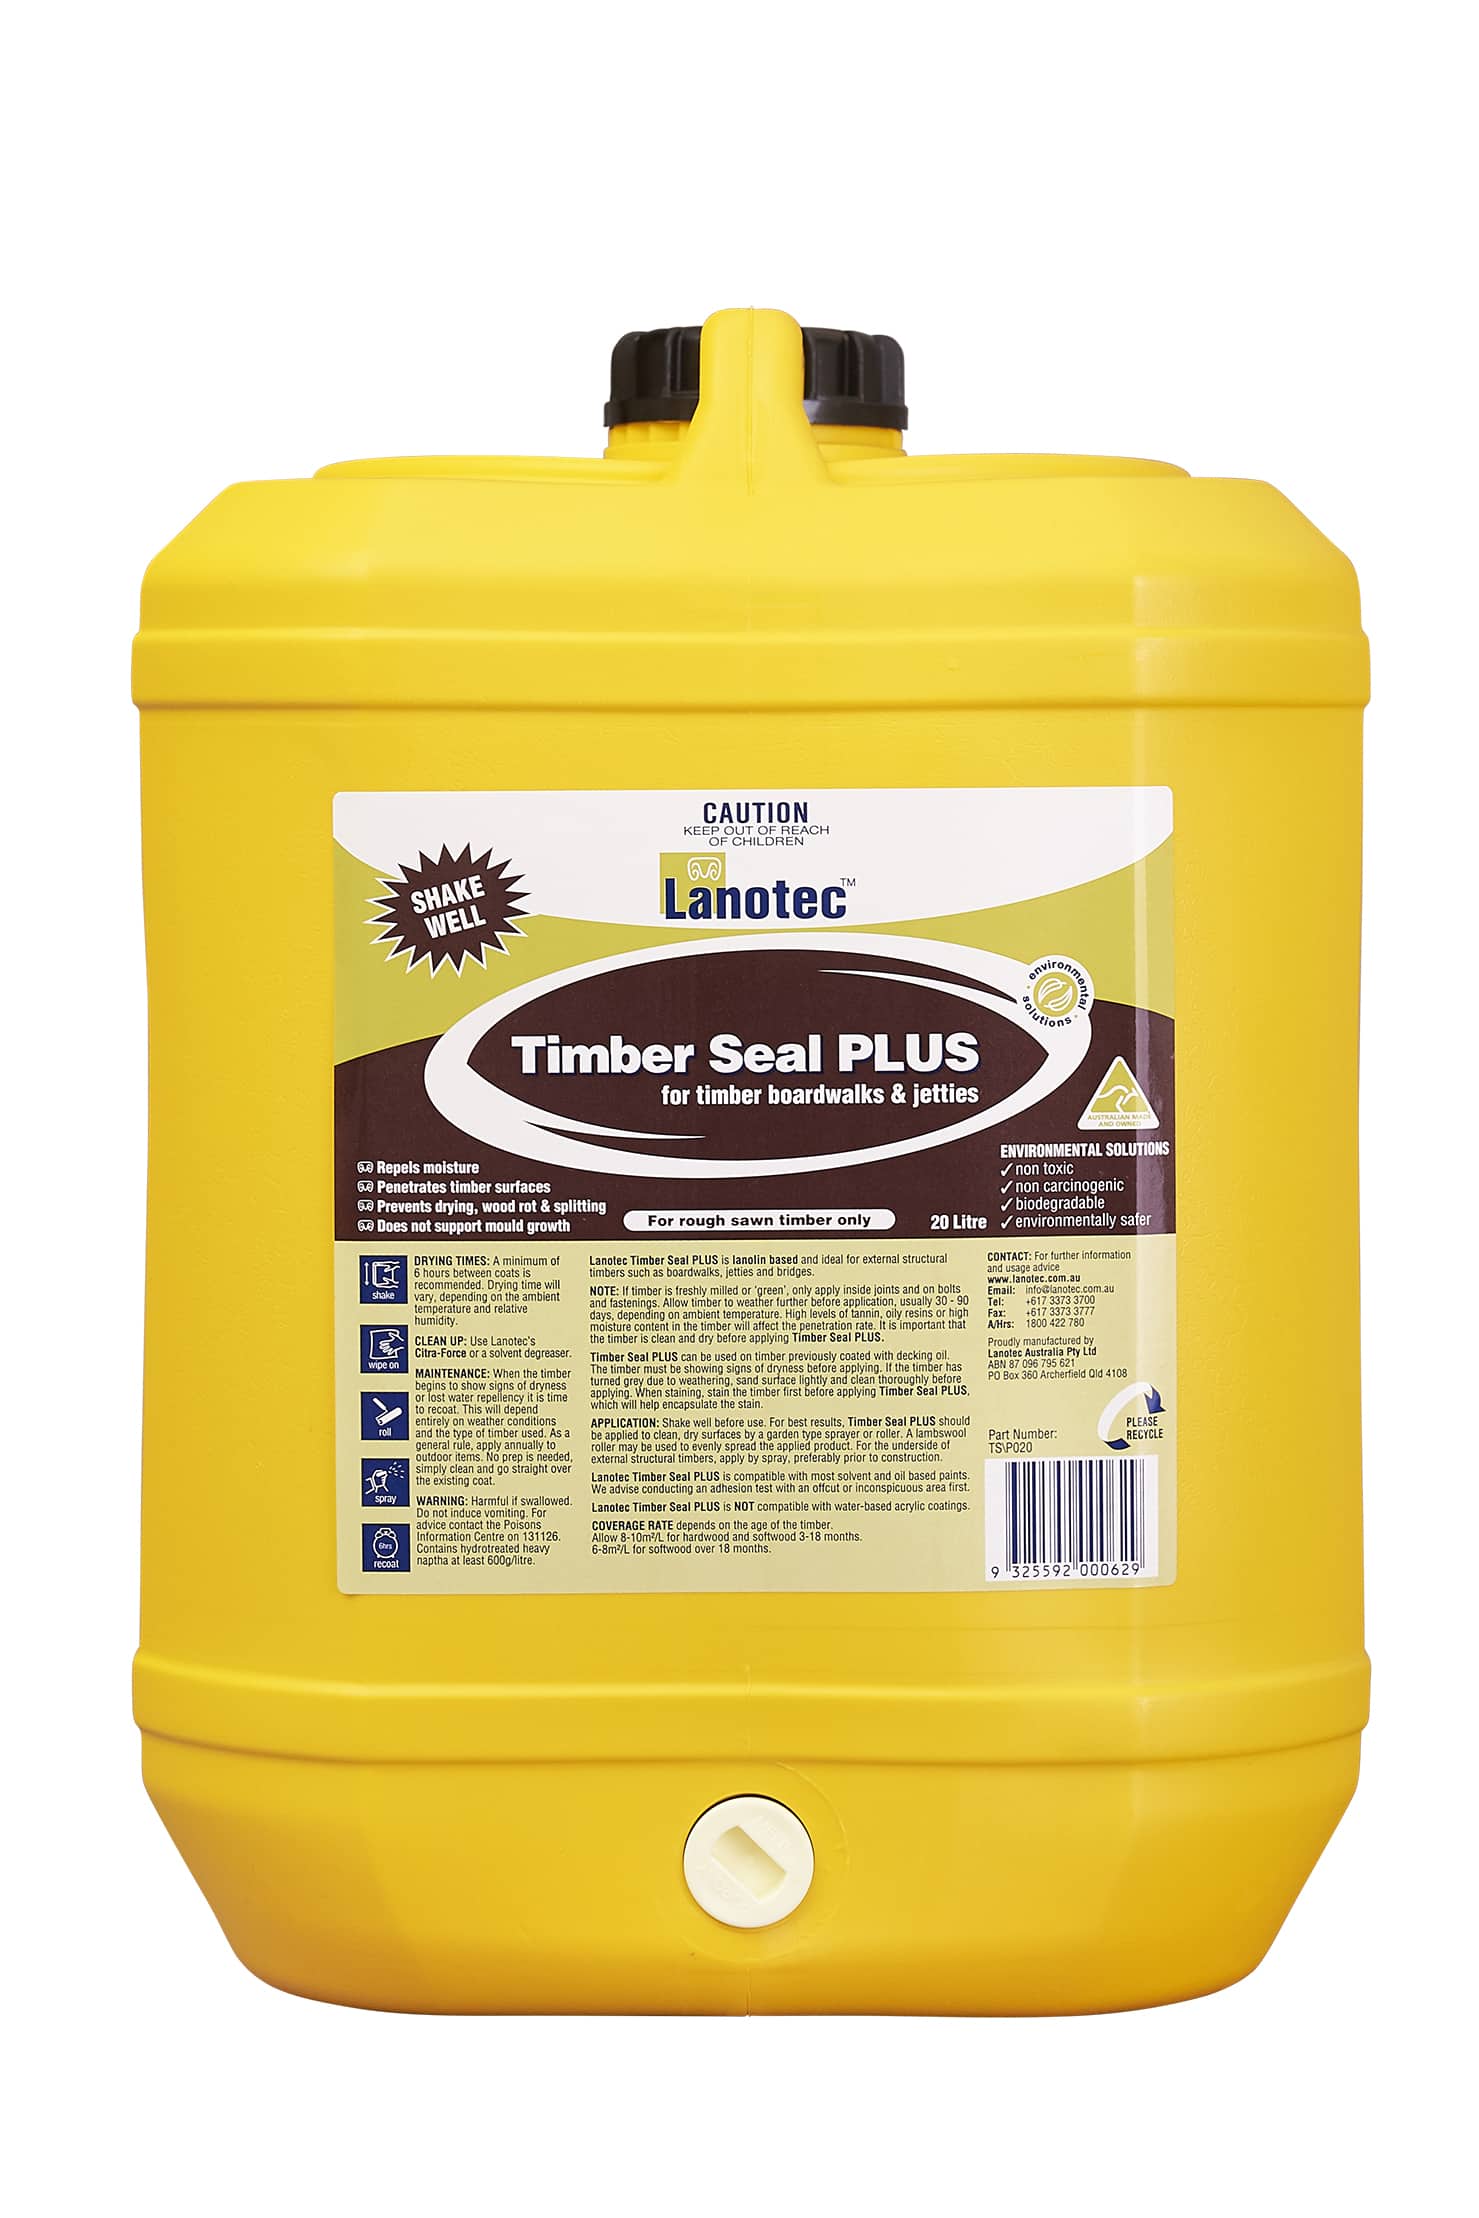 Lanolin Timber Sealer, Timber Seal PLUS